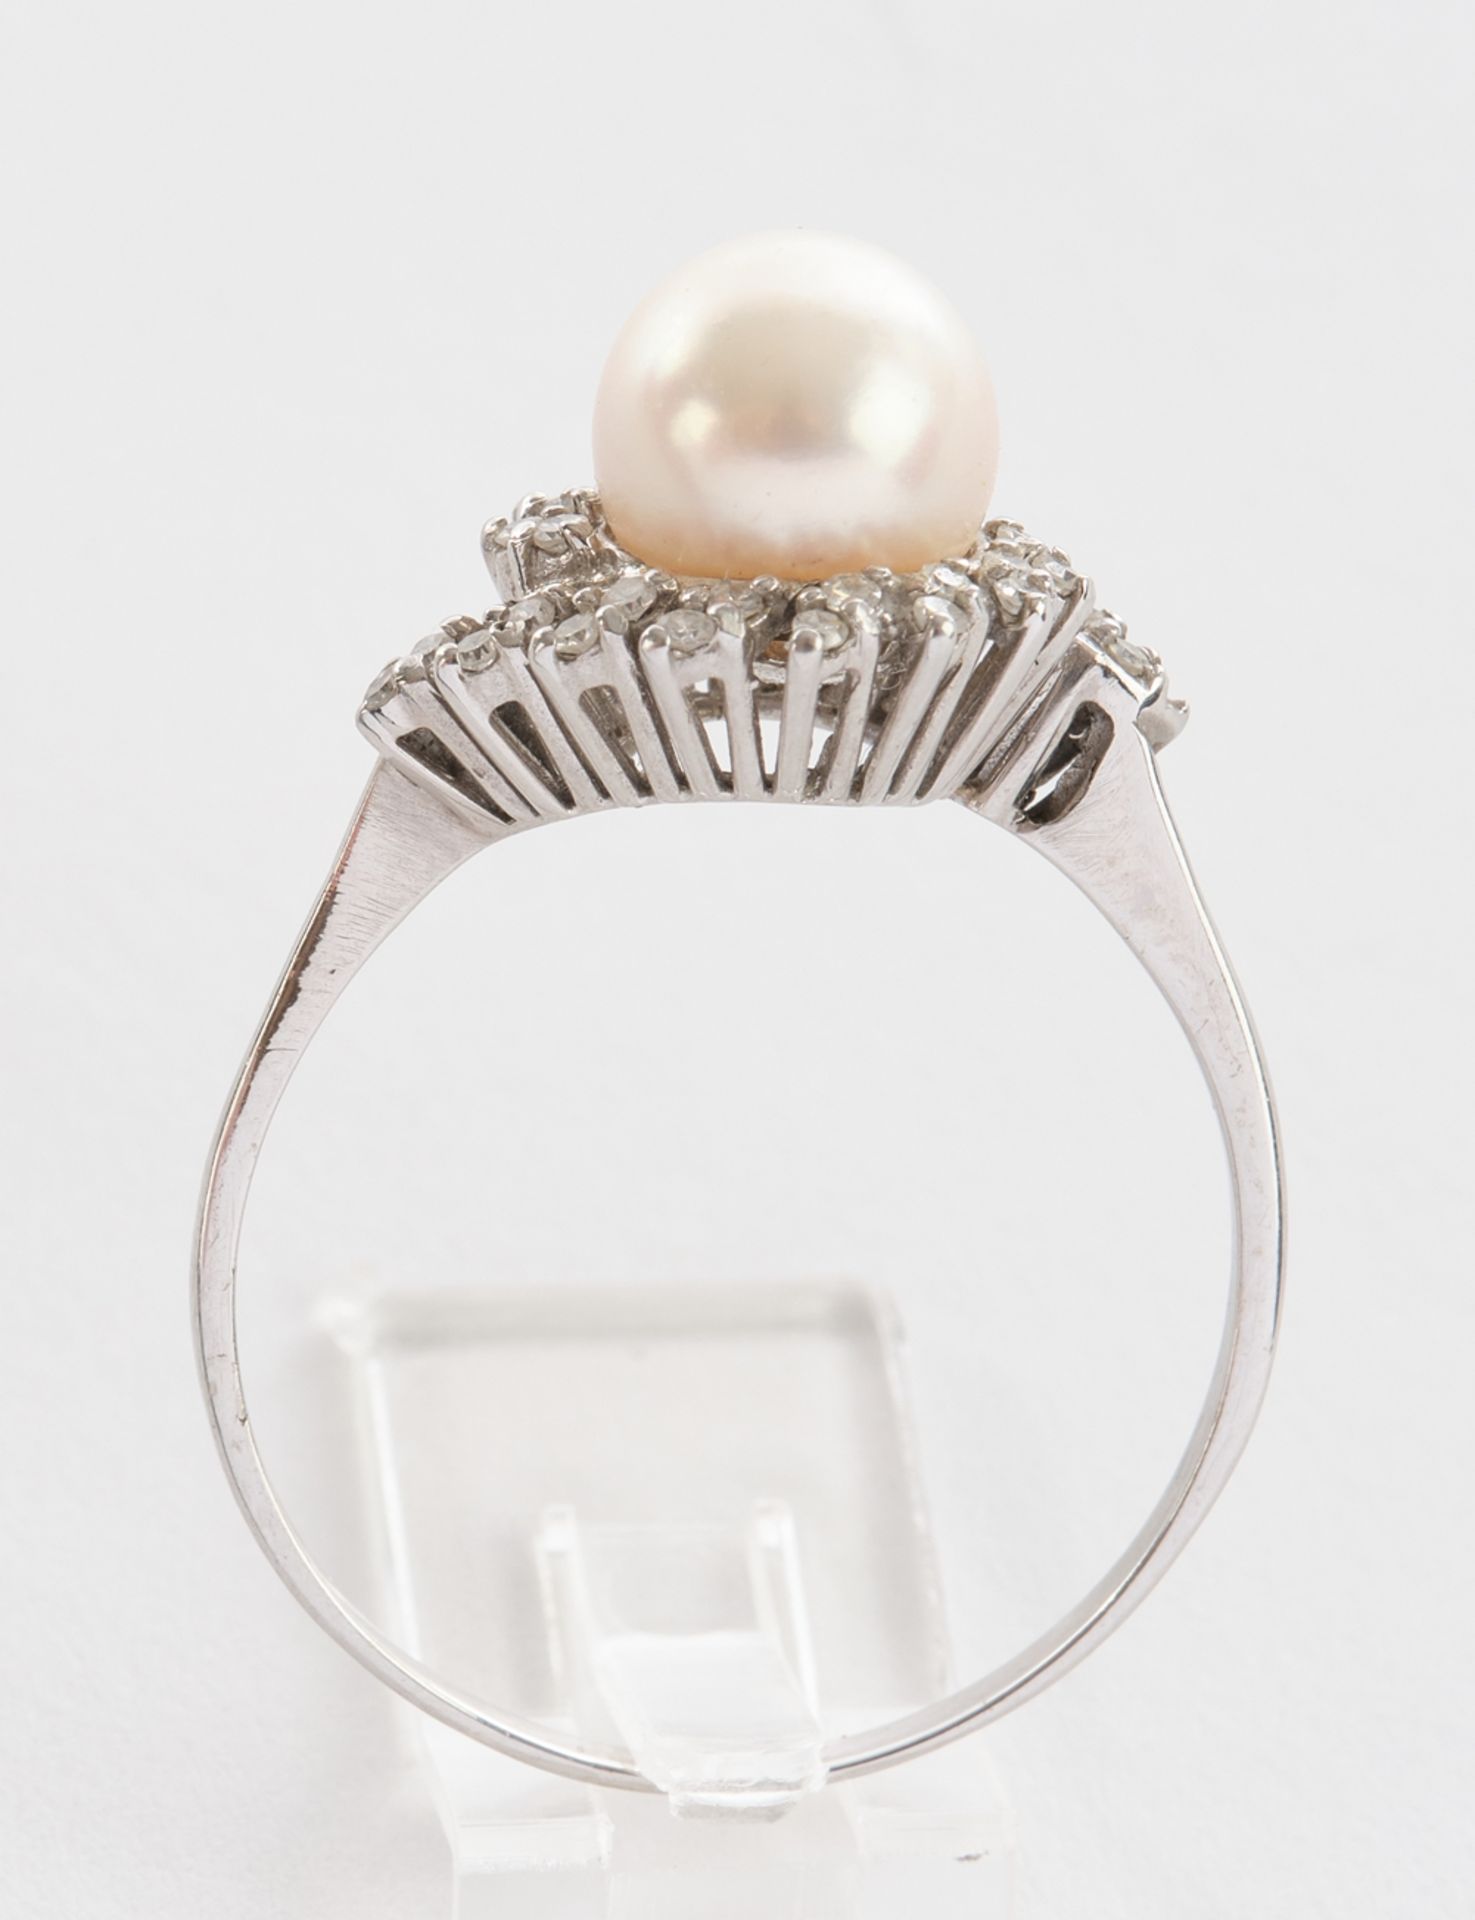 Blütenring, WG 750 geprüft, mit Perle und Brillanten, 31 Achtkantdiamanten (ein Stein fehlt), 4.1 g - Bild 3 aus 3